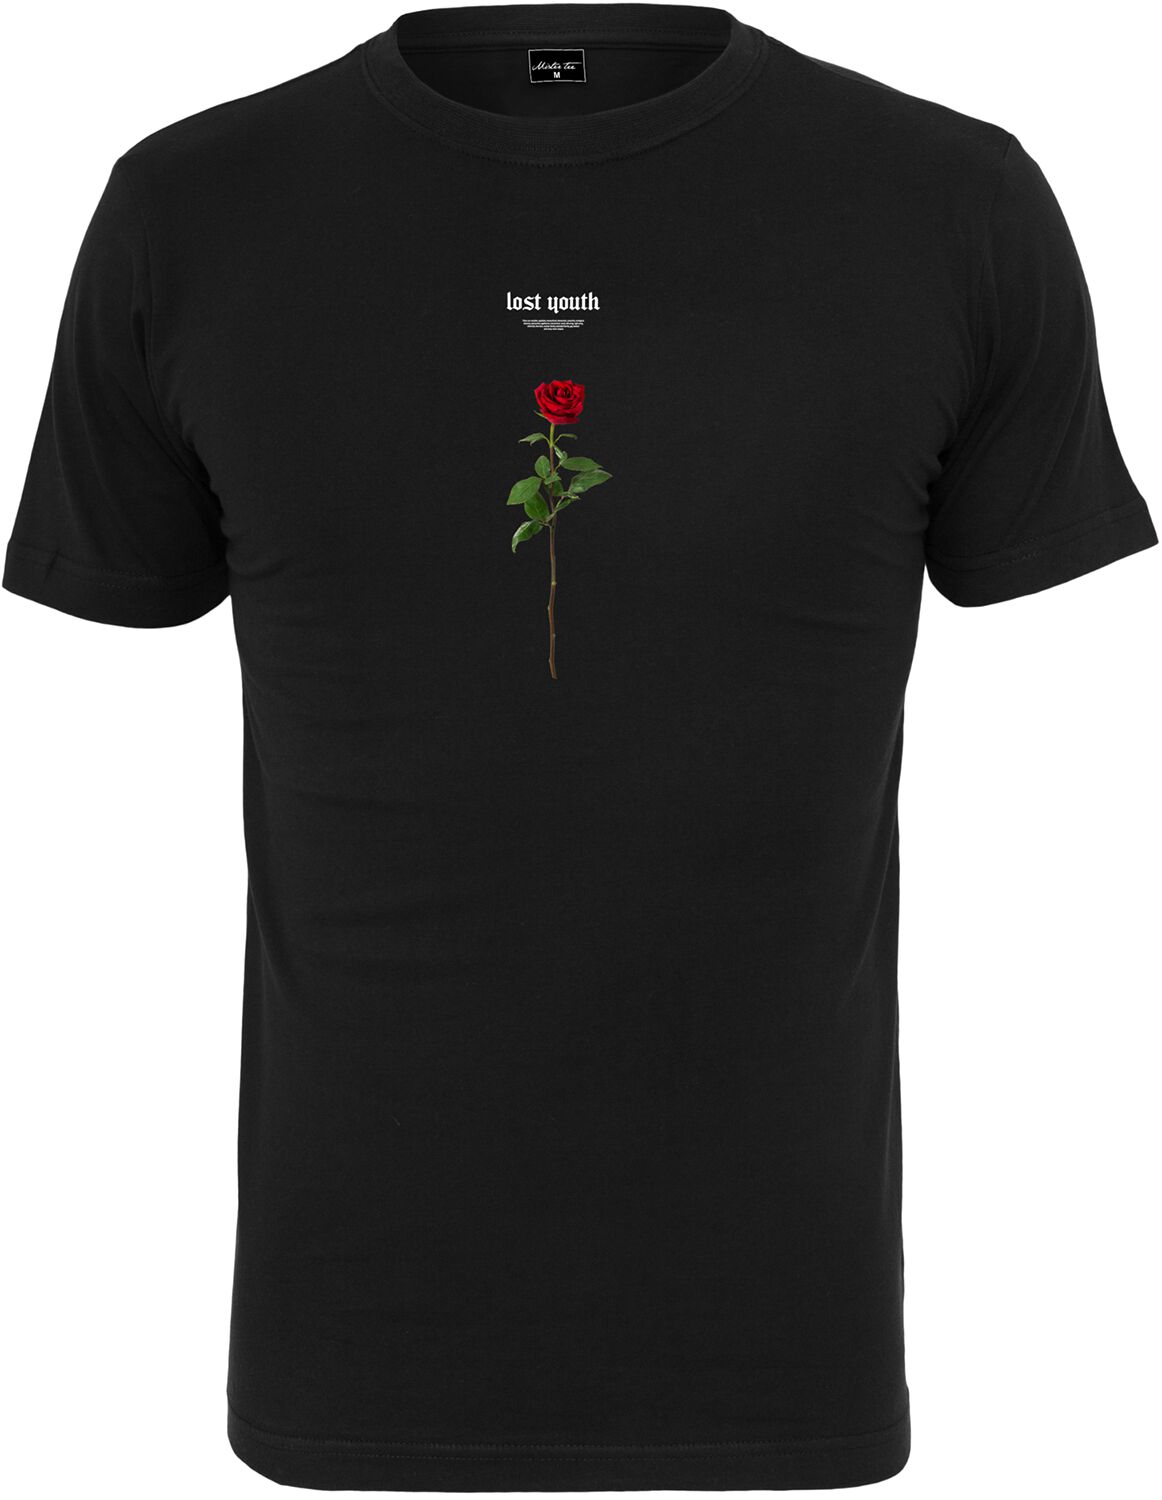 T-Shirt Manches courtes de Mister Tee - Lost Youth Rose Tee - XS à XXL - pour Homme - noir